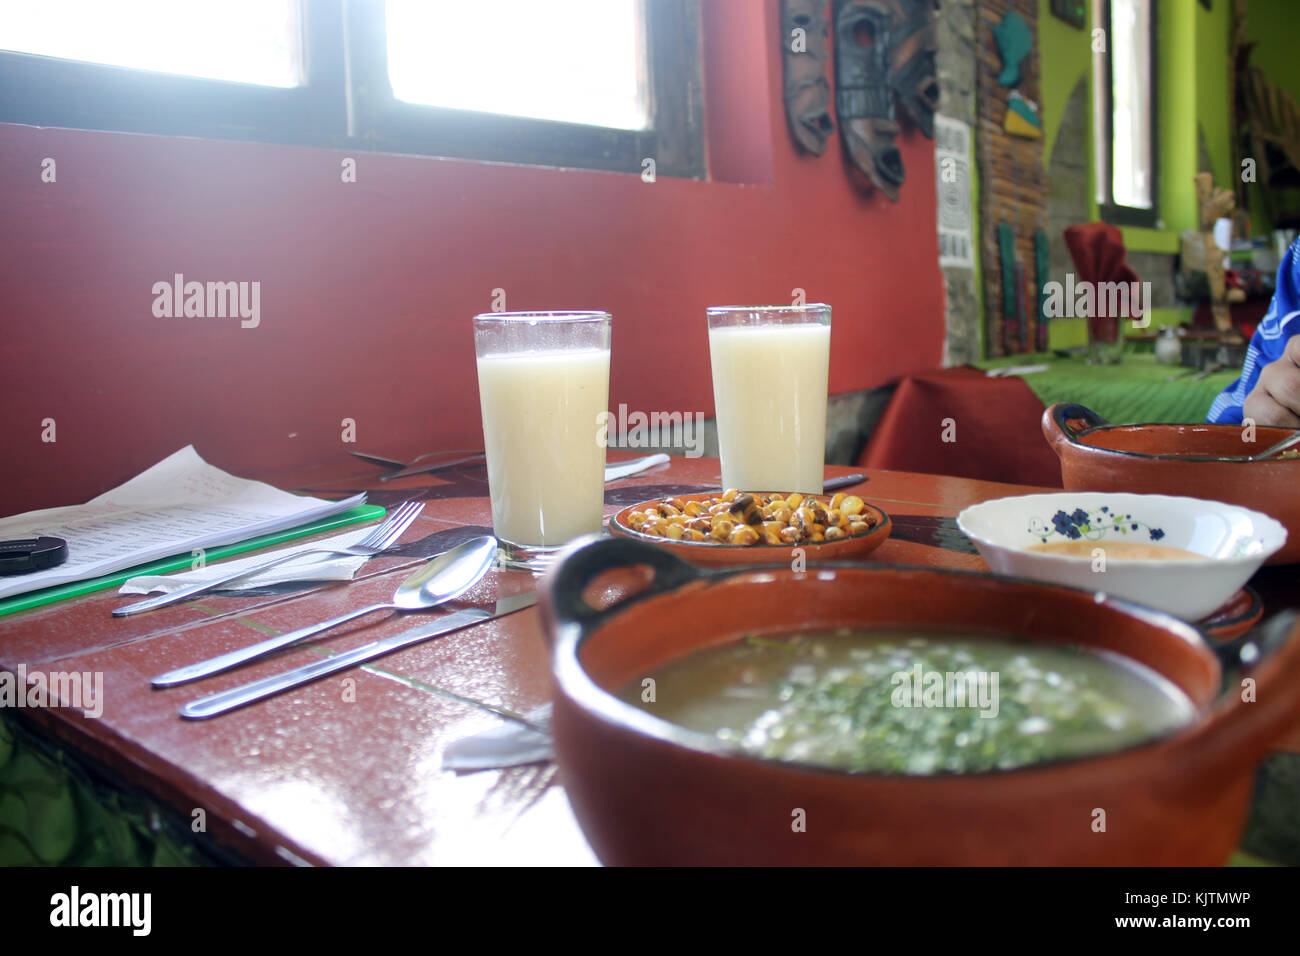 Fotografía de un plato típico de Carpuela-Equateur, se visualiza la comida servida en un cuenco de cerámica, artesanía representativa del sector. Photo Banque D'Images